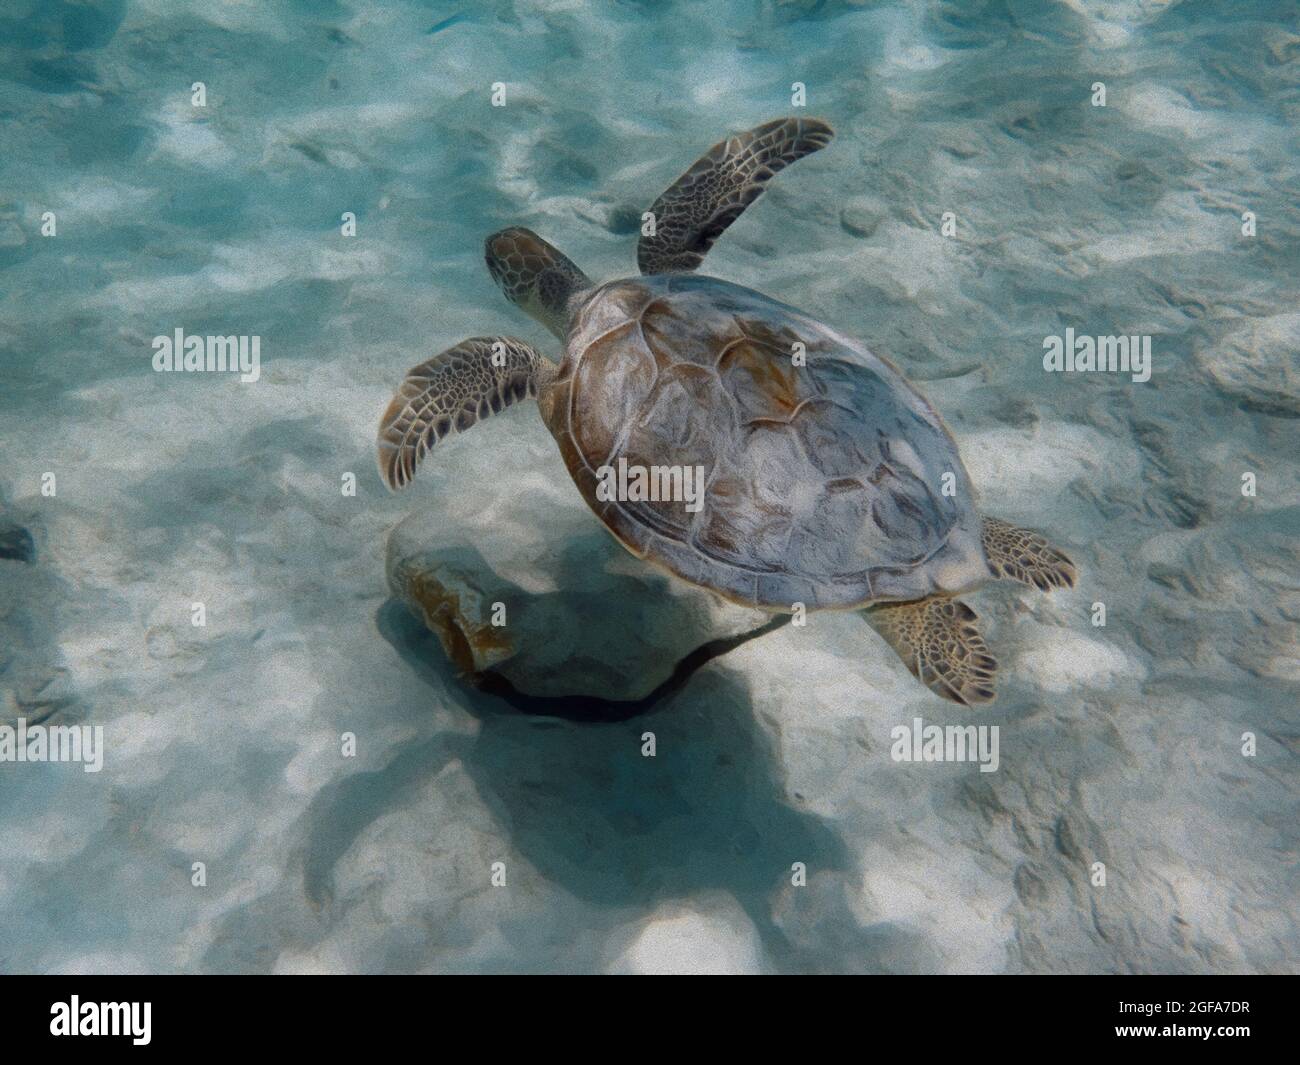 Una ilustración de una tortuga marina nadando sobre una zona arenosa del océano. Foto de stock